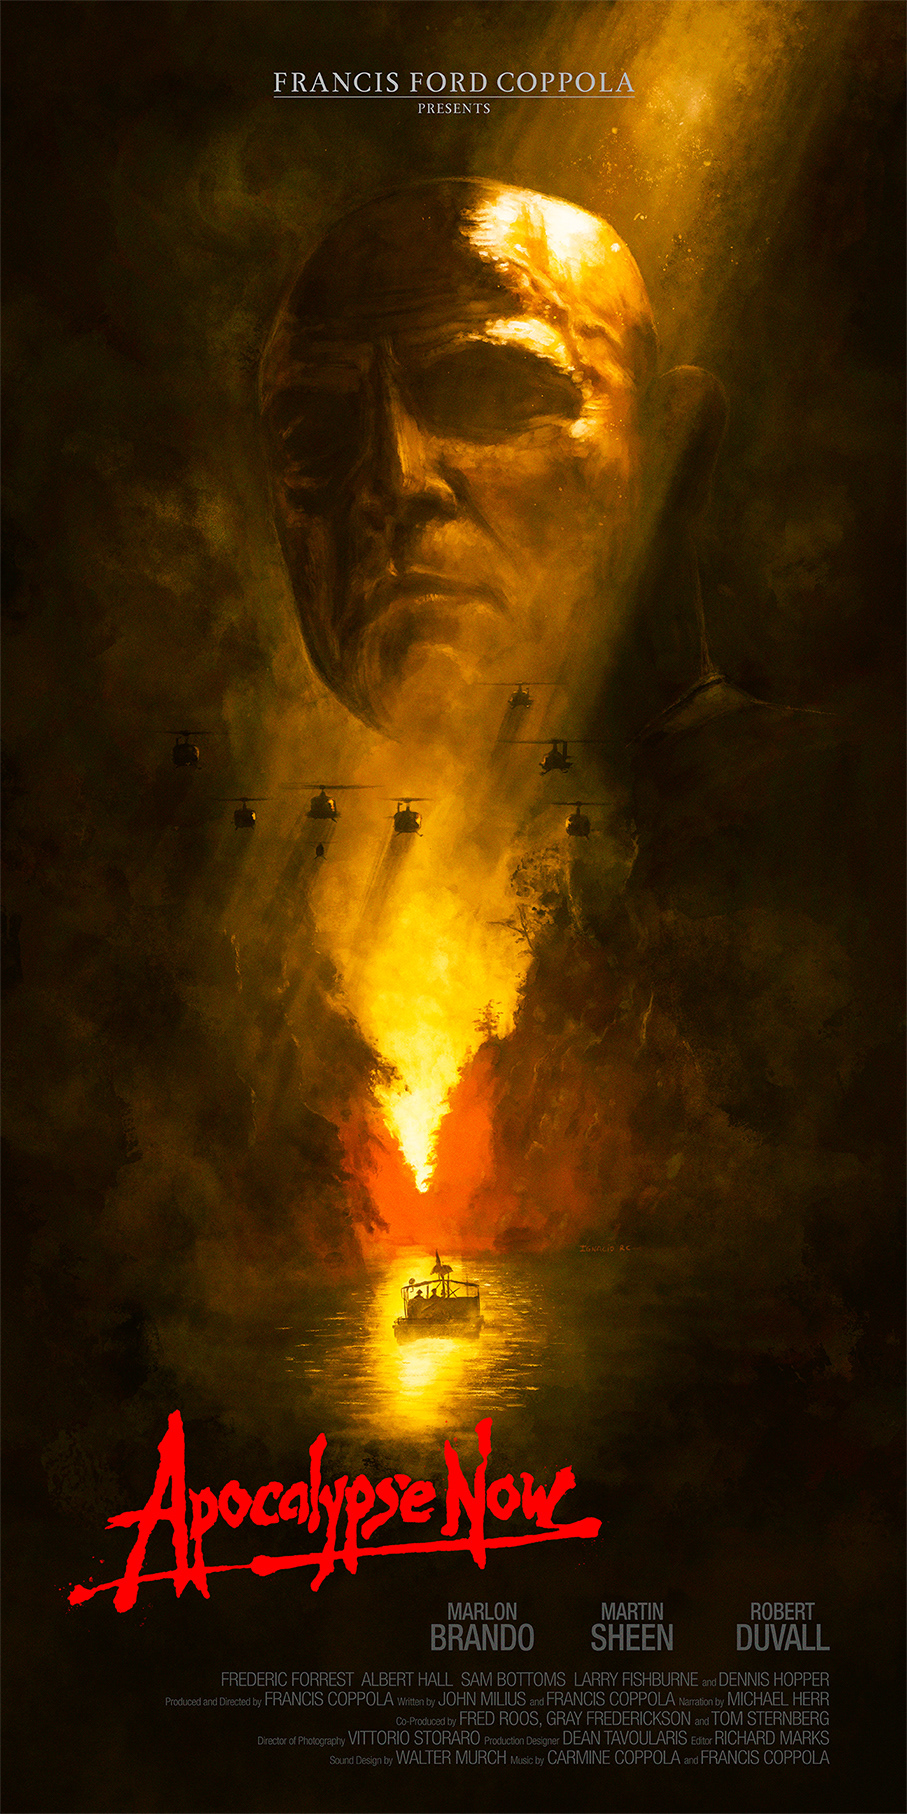 Ignacio RC - Apocalypse Now